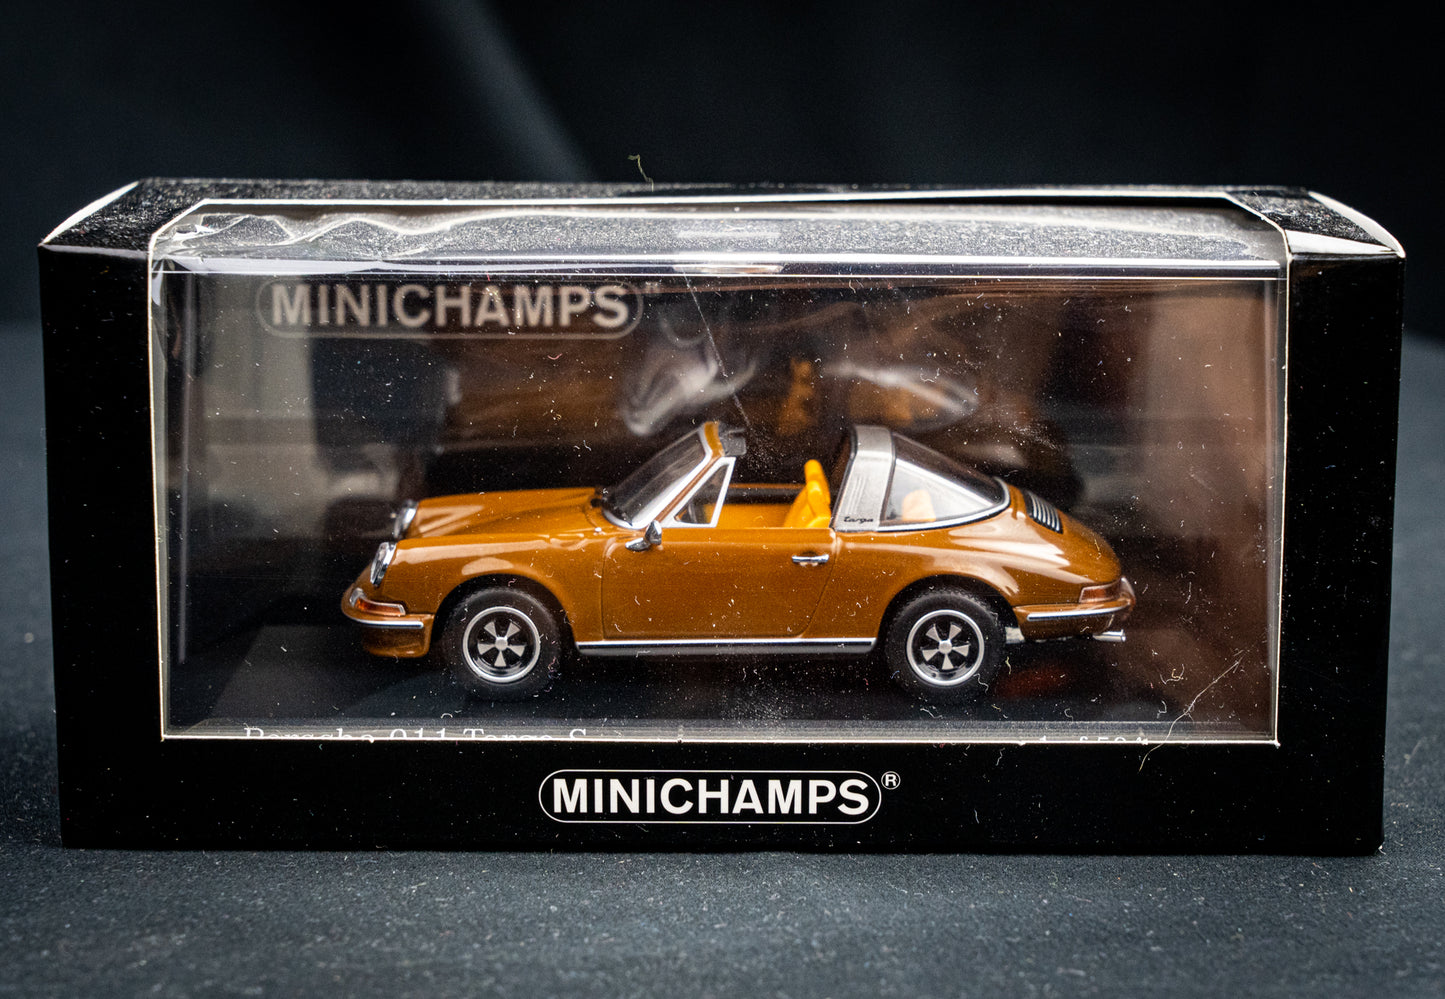 Porsche 911 Targa S 1972 Sepiabraun - Minichamps 1:43 limitiert auf 504 Stk.